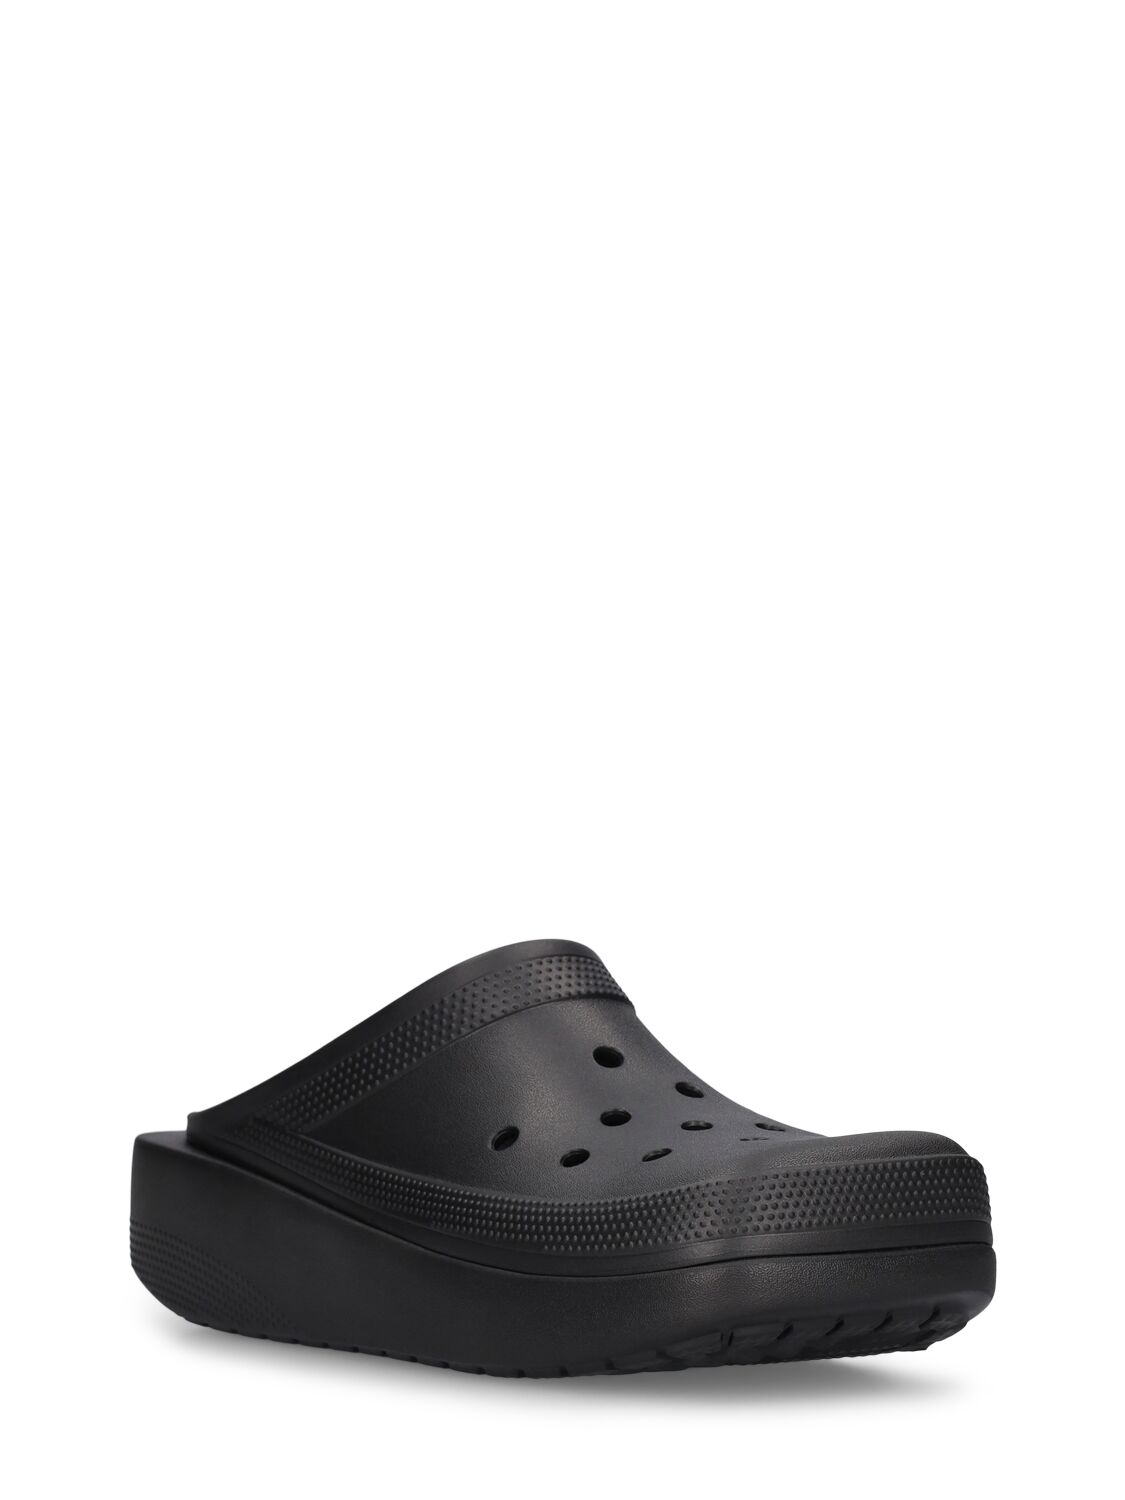 Shop Crocs Blunt Toe Slides In Black